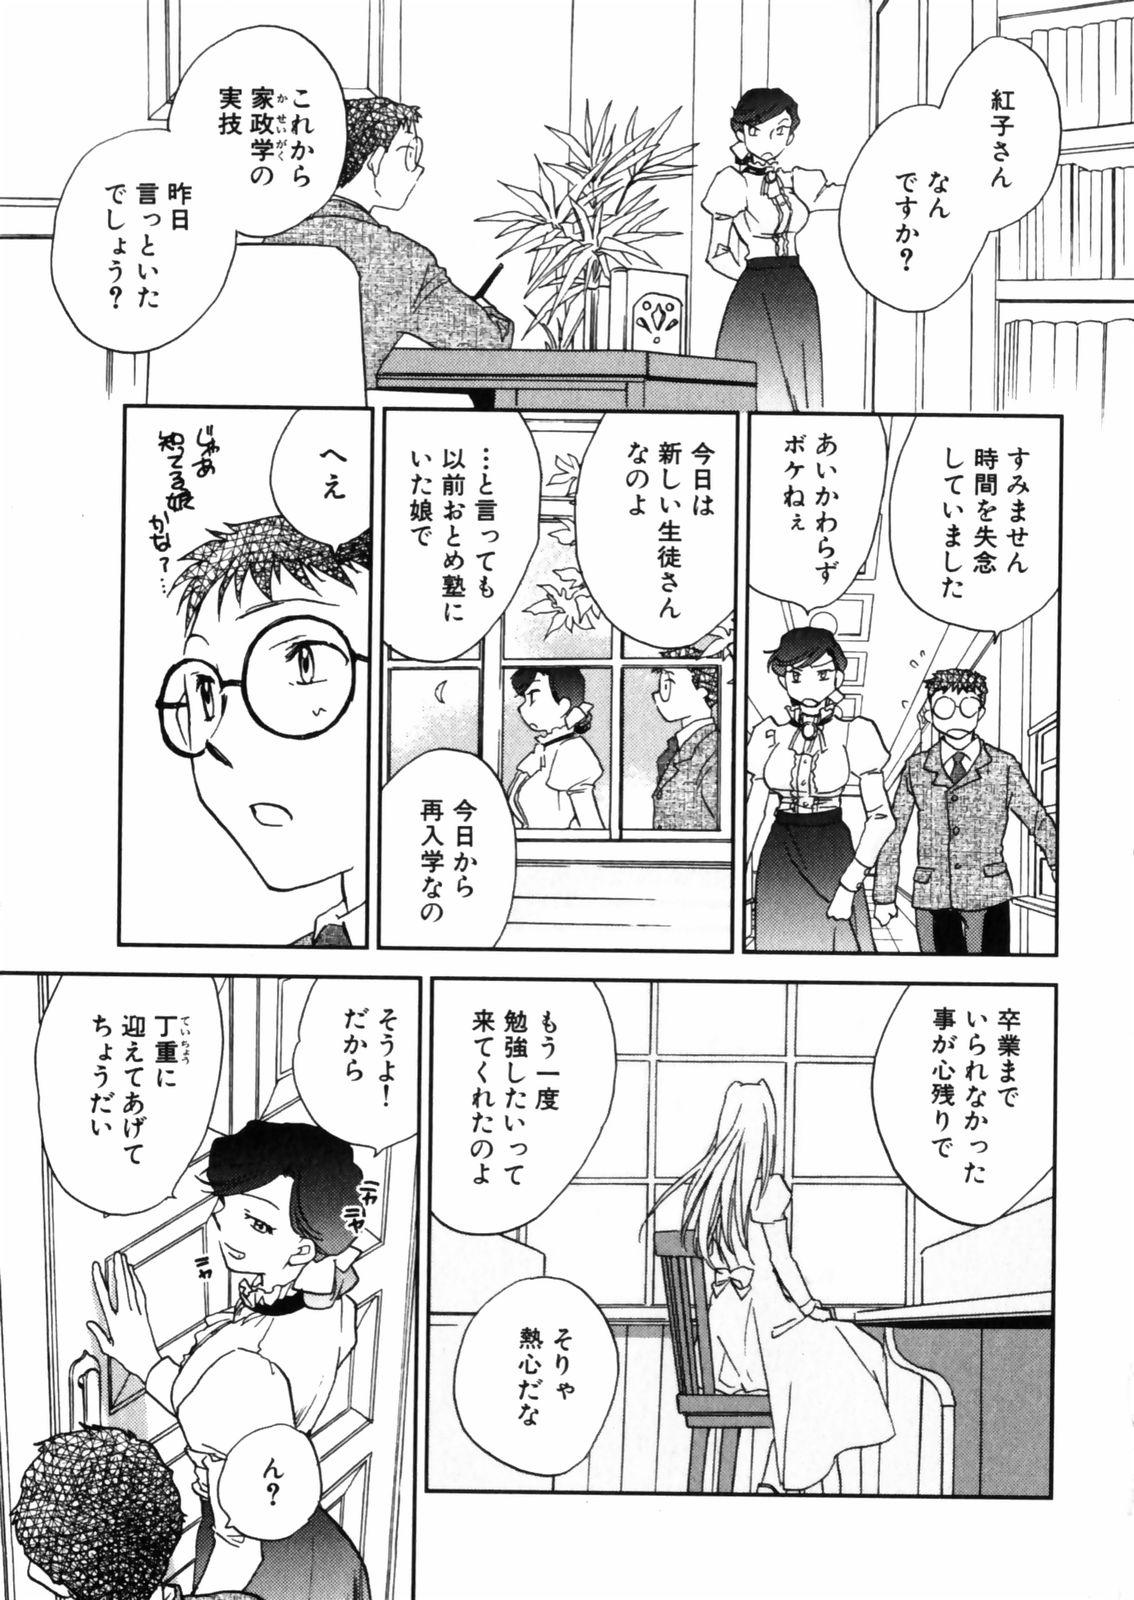 [Okano Ahiru] Hanasake ! Otome Juku (Otome Private Tutoring School) Vol.2 134